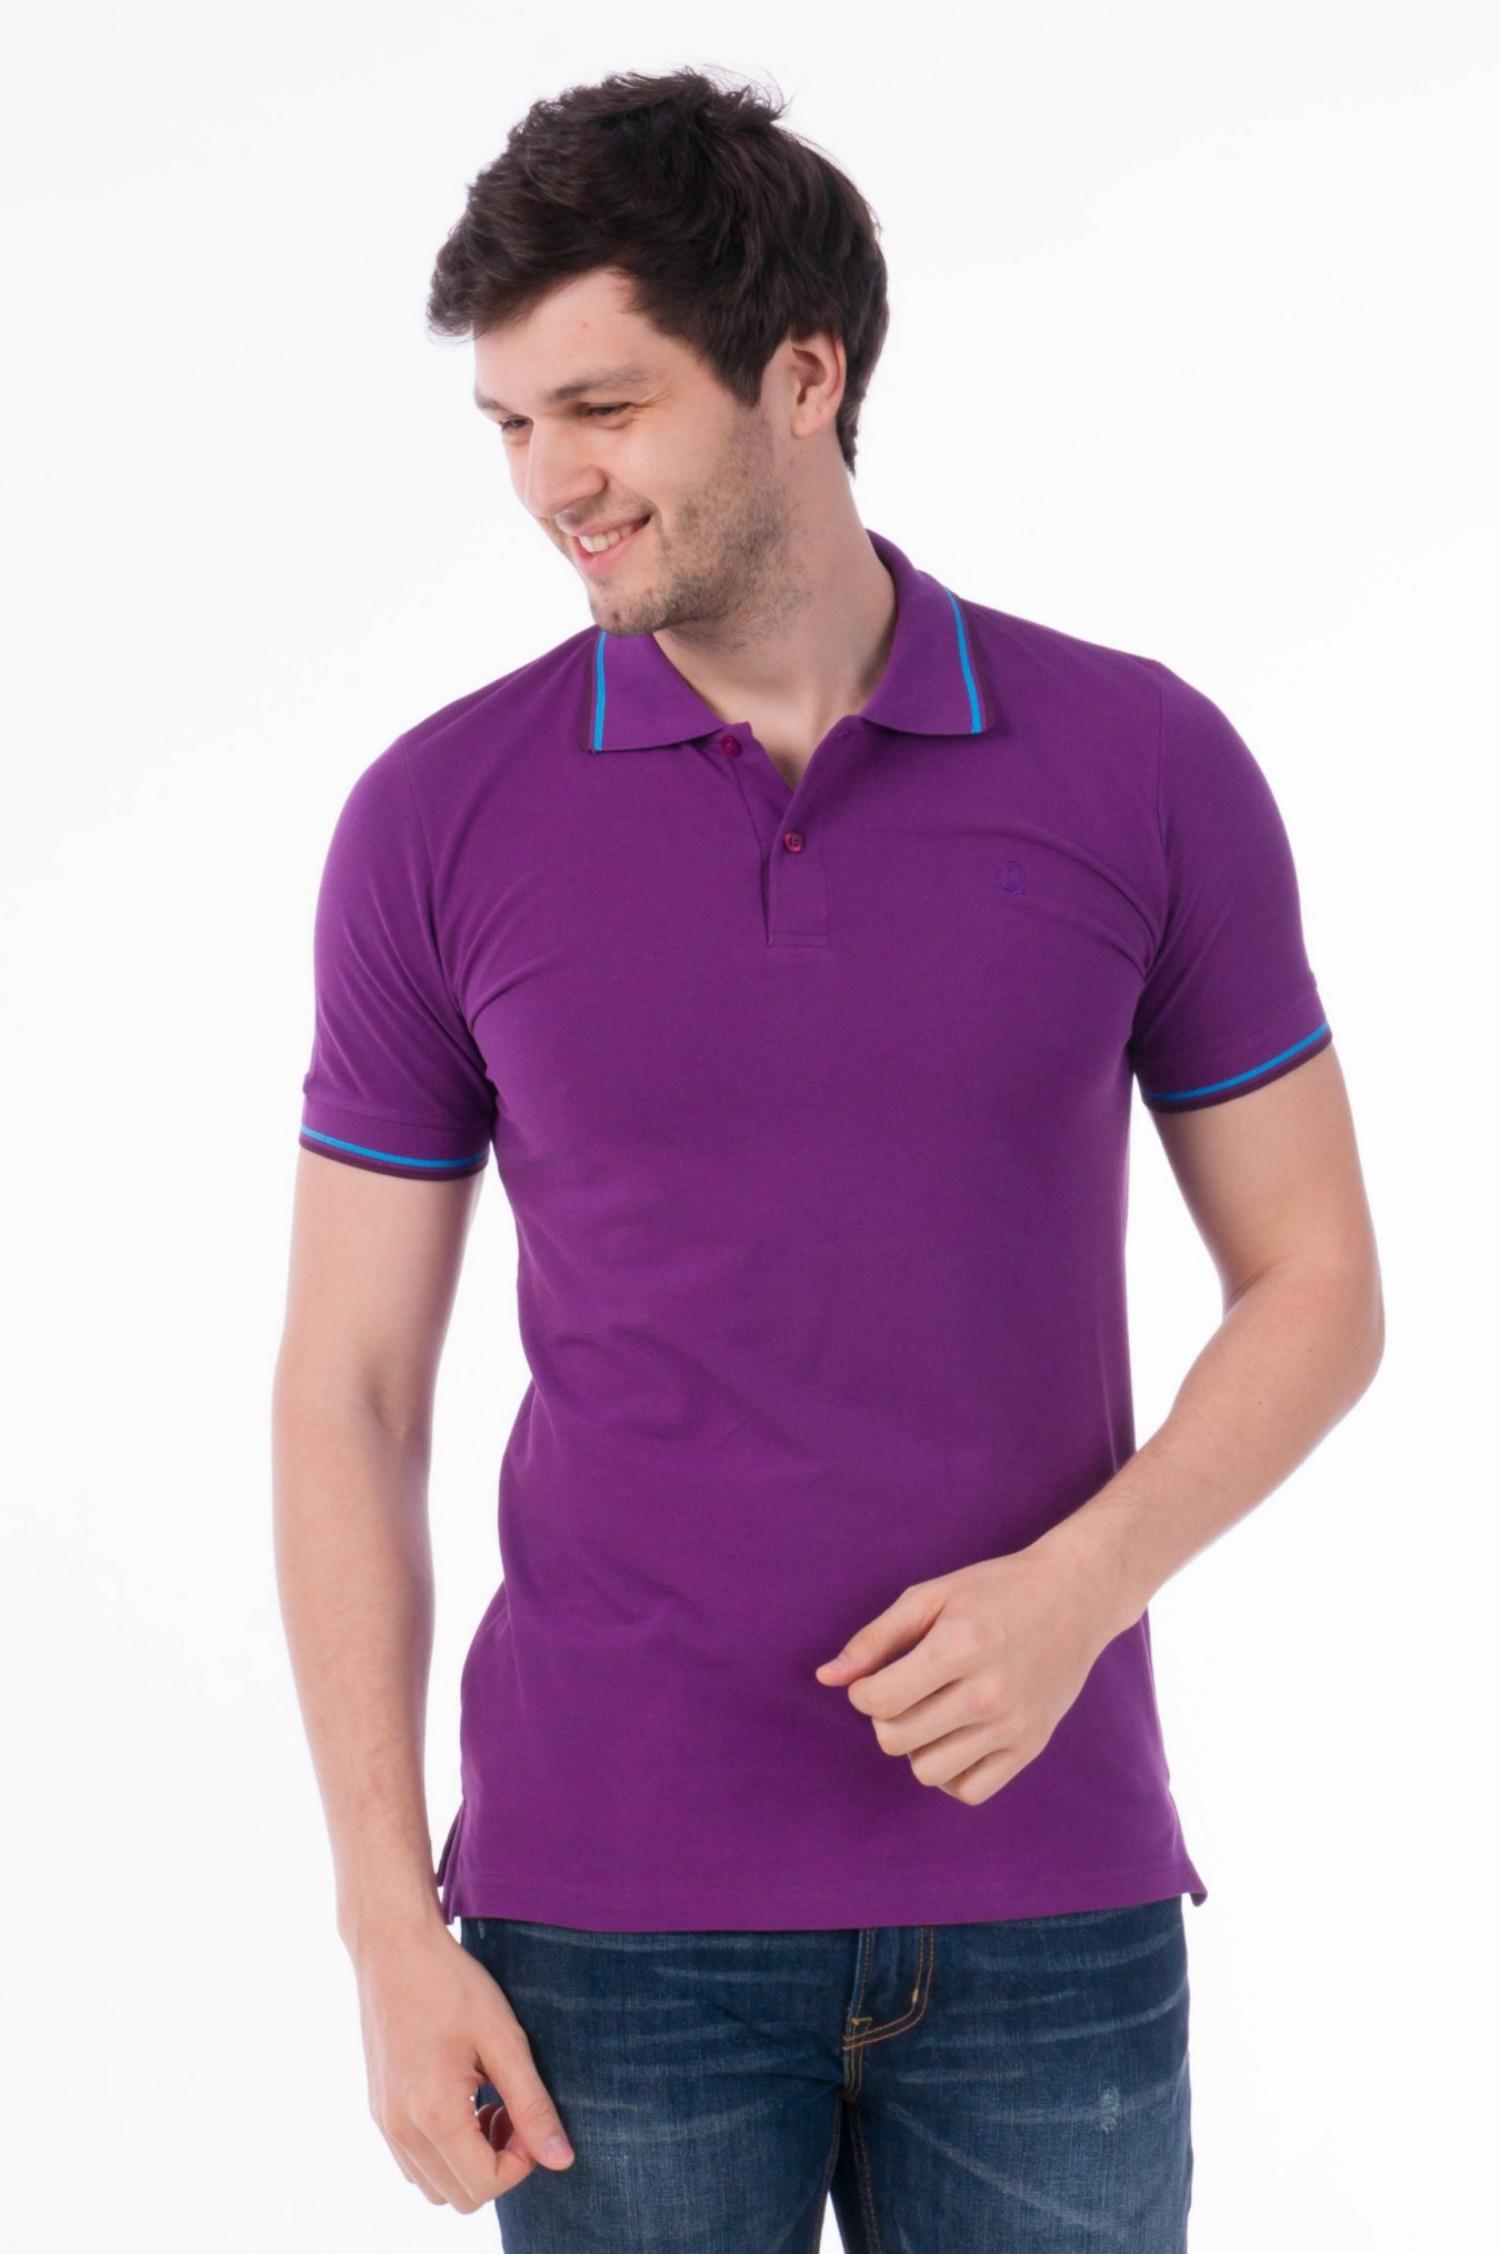 Рубашка поло мужская улучшенного кроя, фиолетовая. Вид спереди.